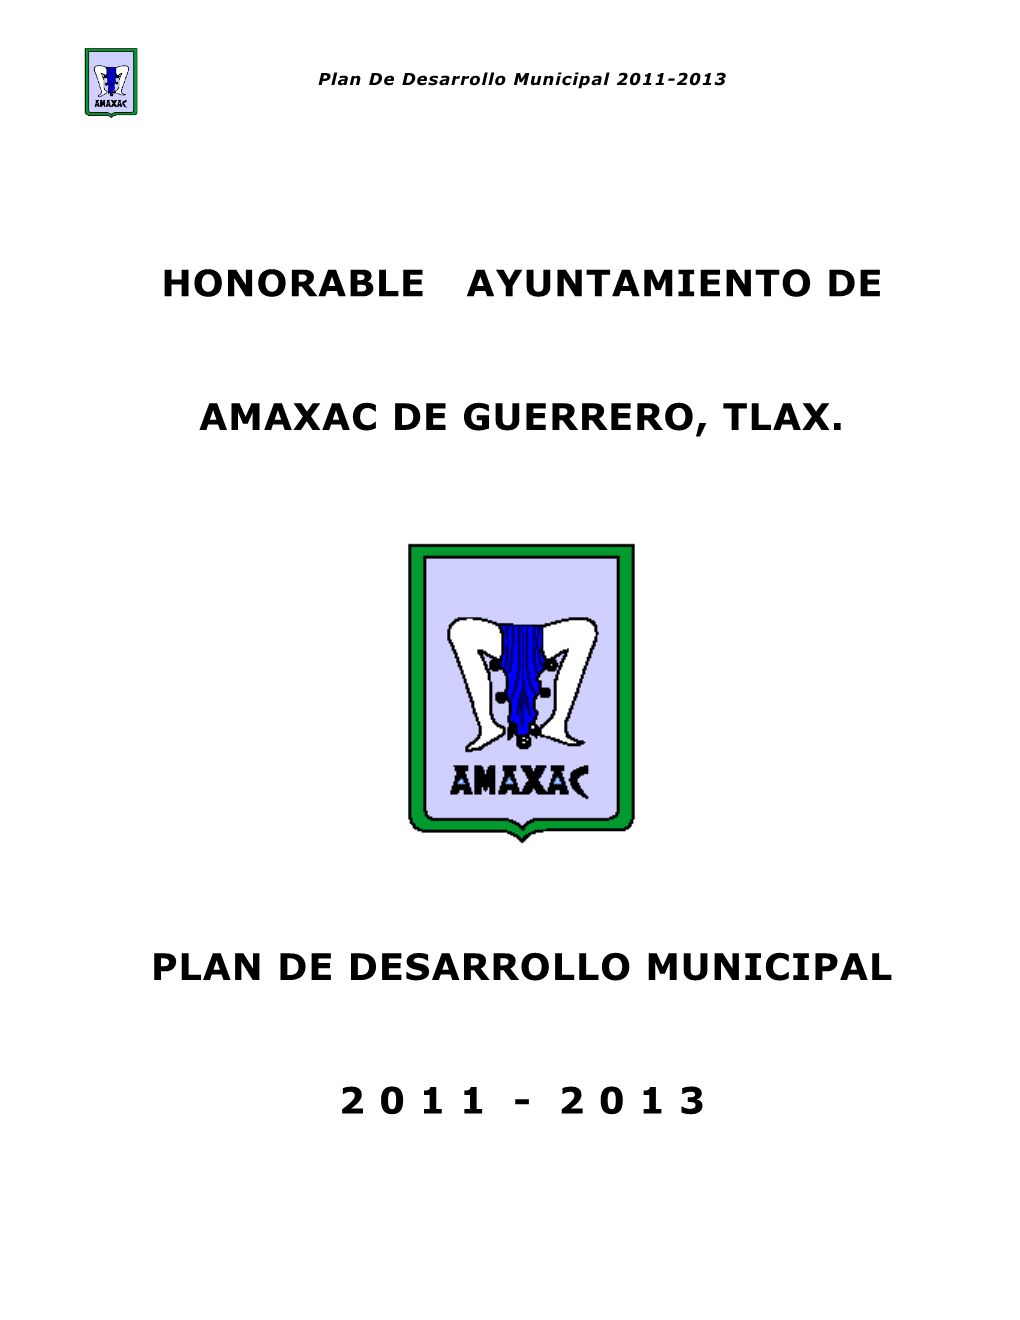 Honorable Ayuntamiento De Amaxac De Guerrero, Tlax